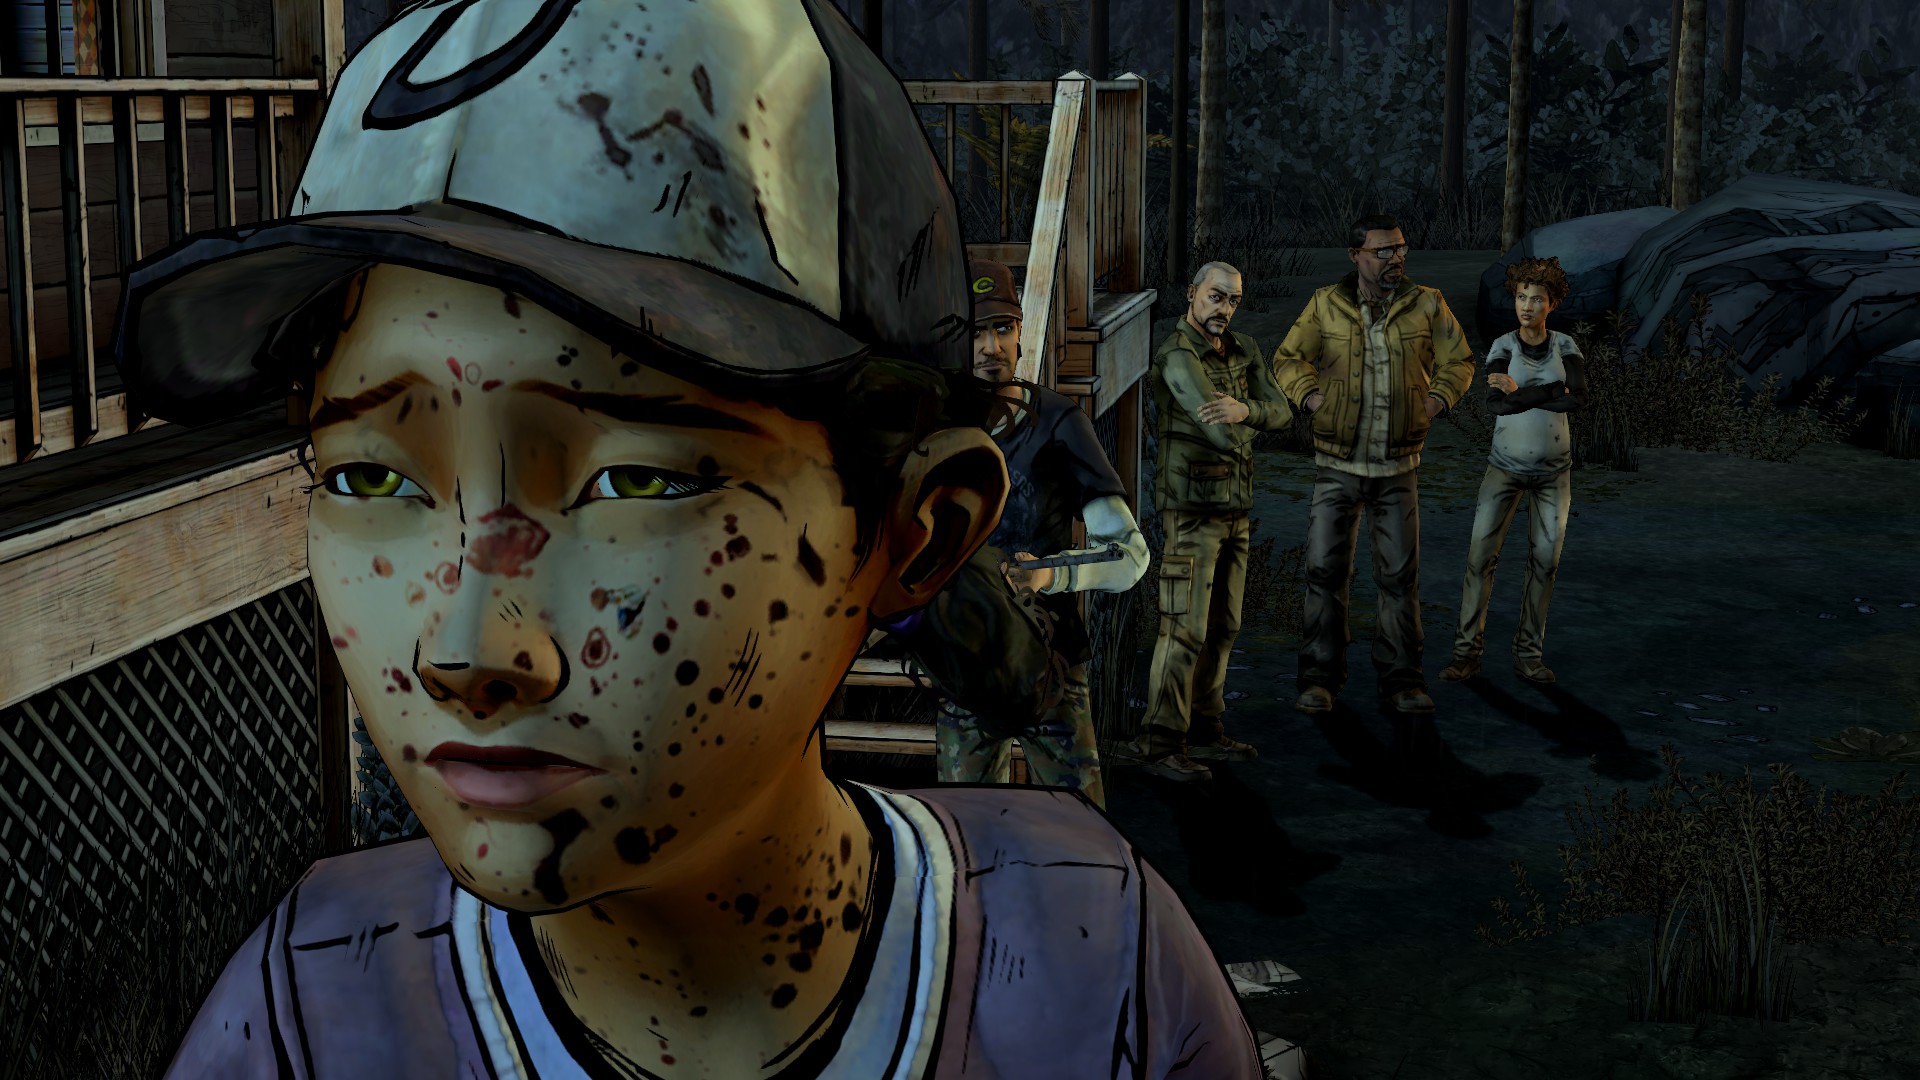 The Walking Dead: A Telltale Games Series - GameSpot